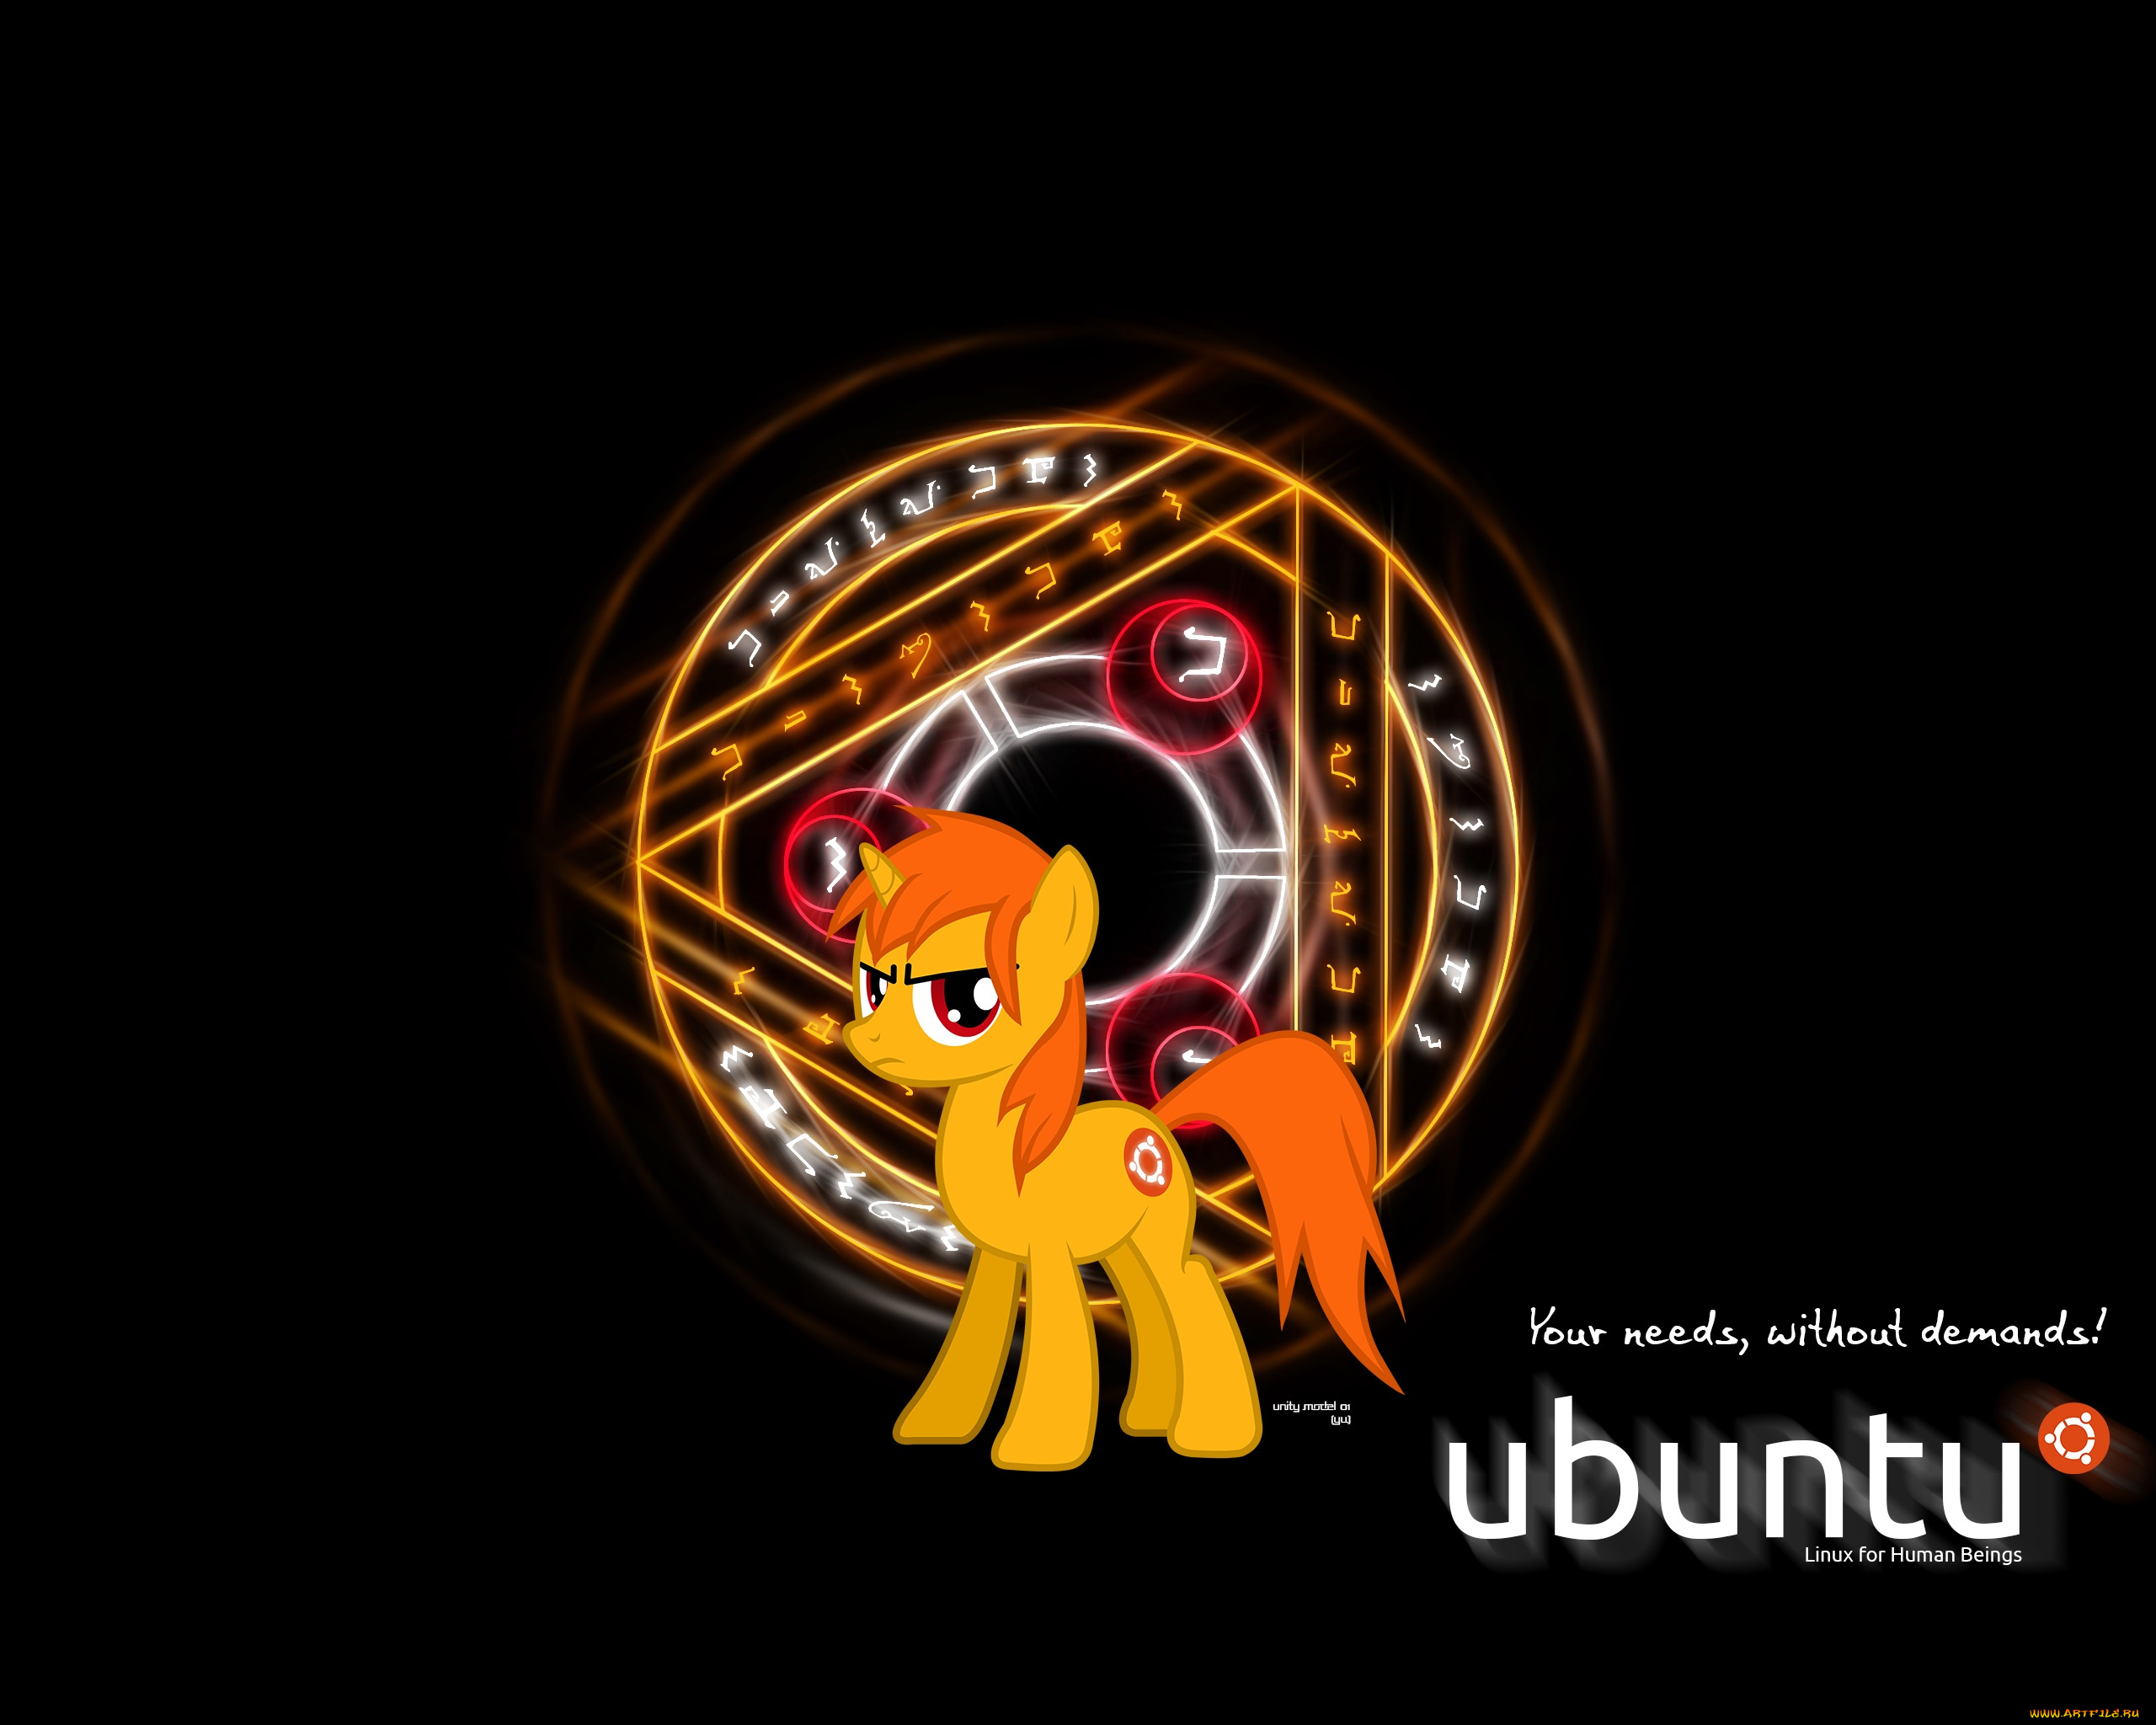 компьютеры, ubuntu, linux, фон, логотип, лошадка